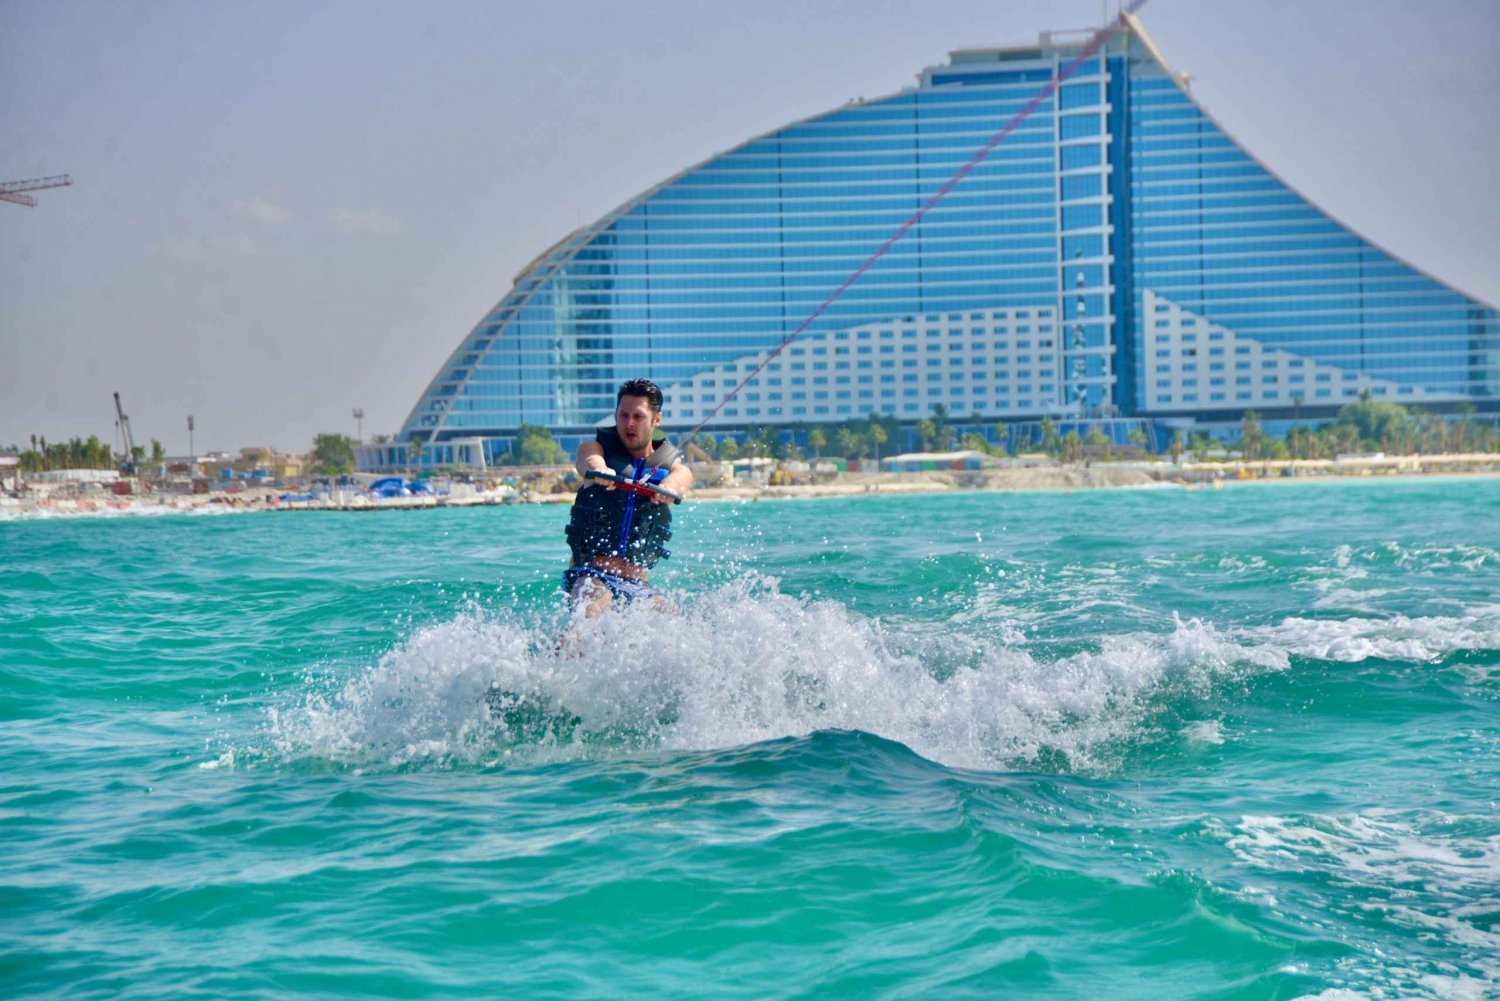 WakeBoard : Hiihtää Dubain merivedellä Wakeboardilla